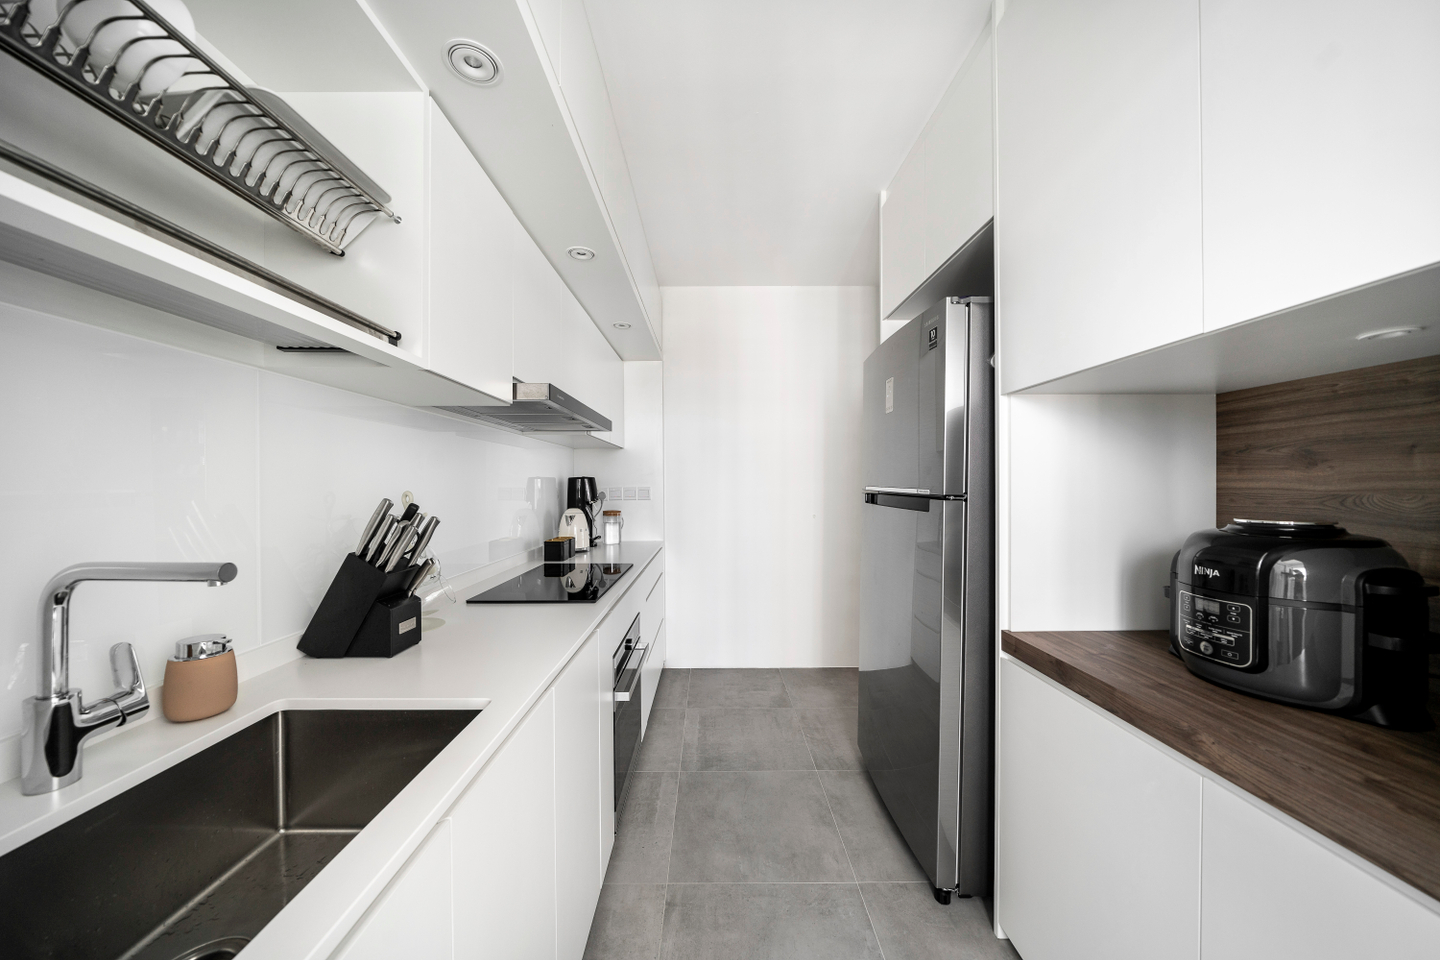 Modern White Laminates For Kitchens - Livspace